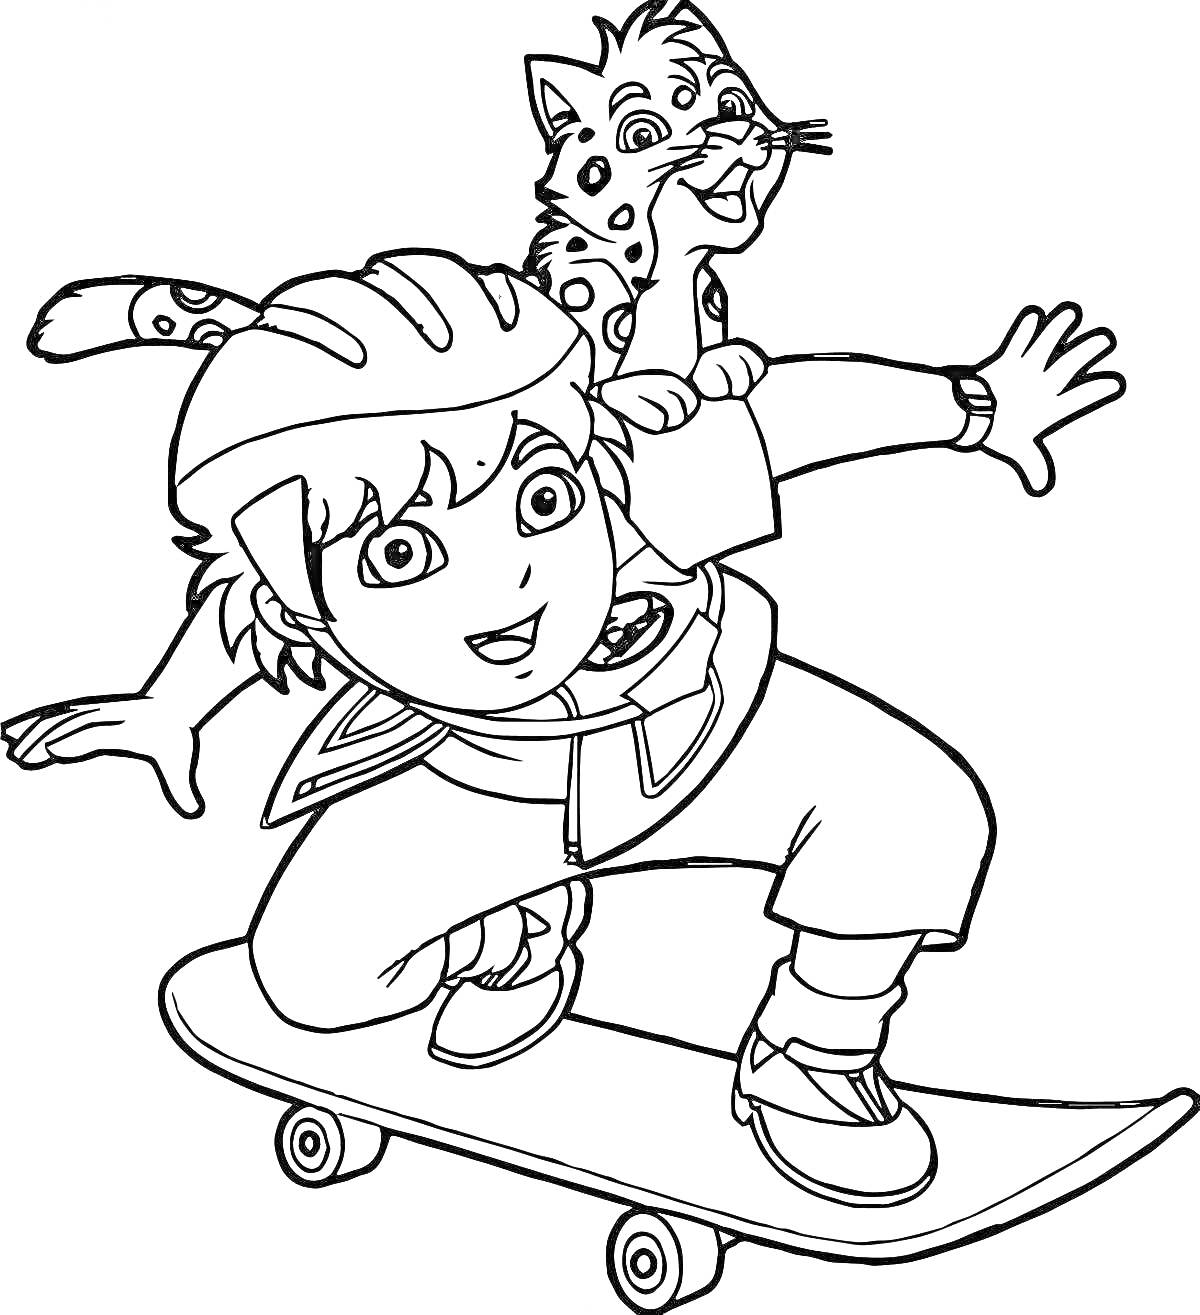 Раскраска Диего катается на скейтборде с леопардом на плече